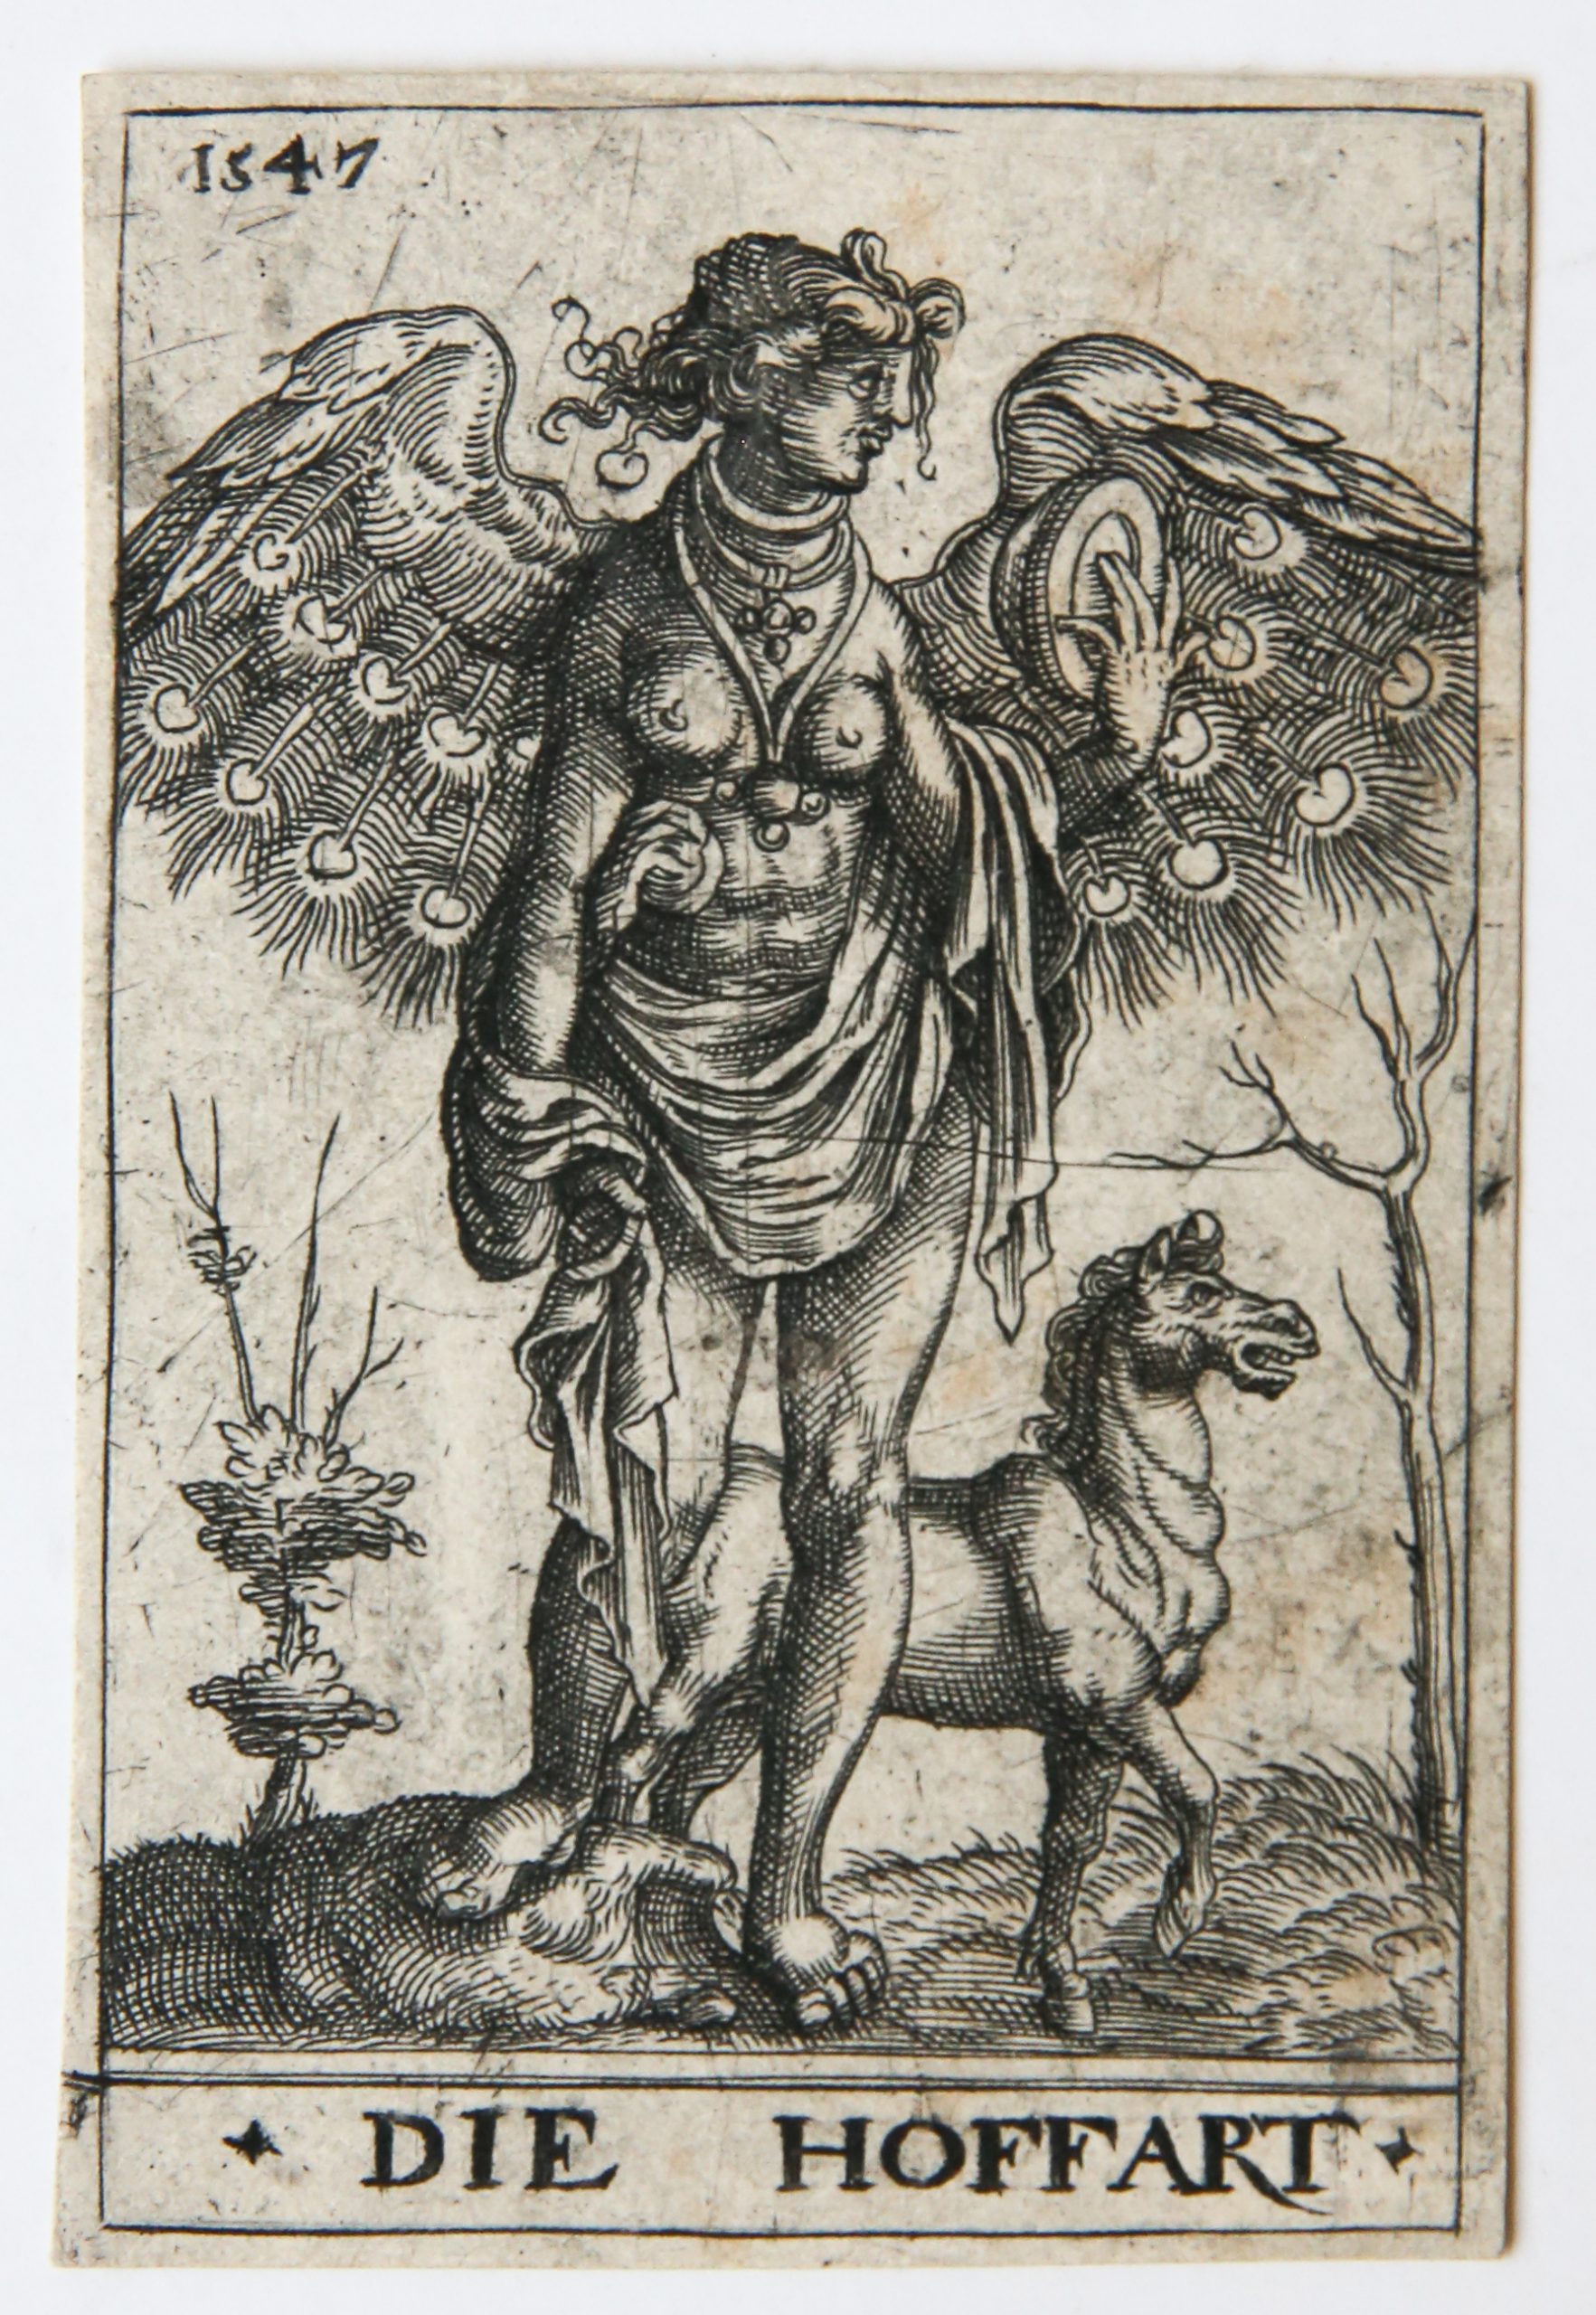 [Antique print, engraving/gravure] DIE HOFFART (Superbia)/Hooghartigheid, published 1547.